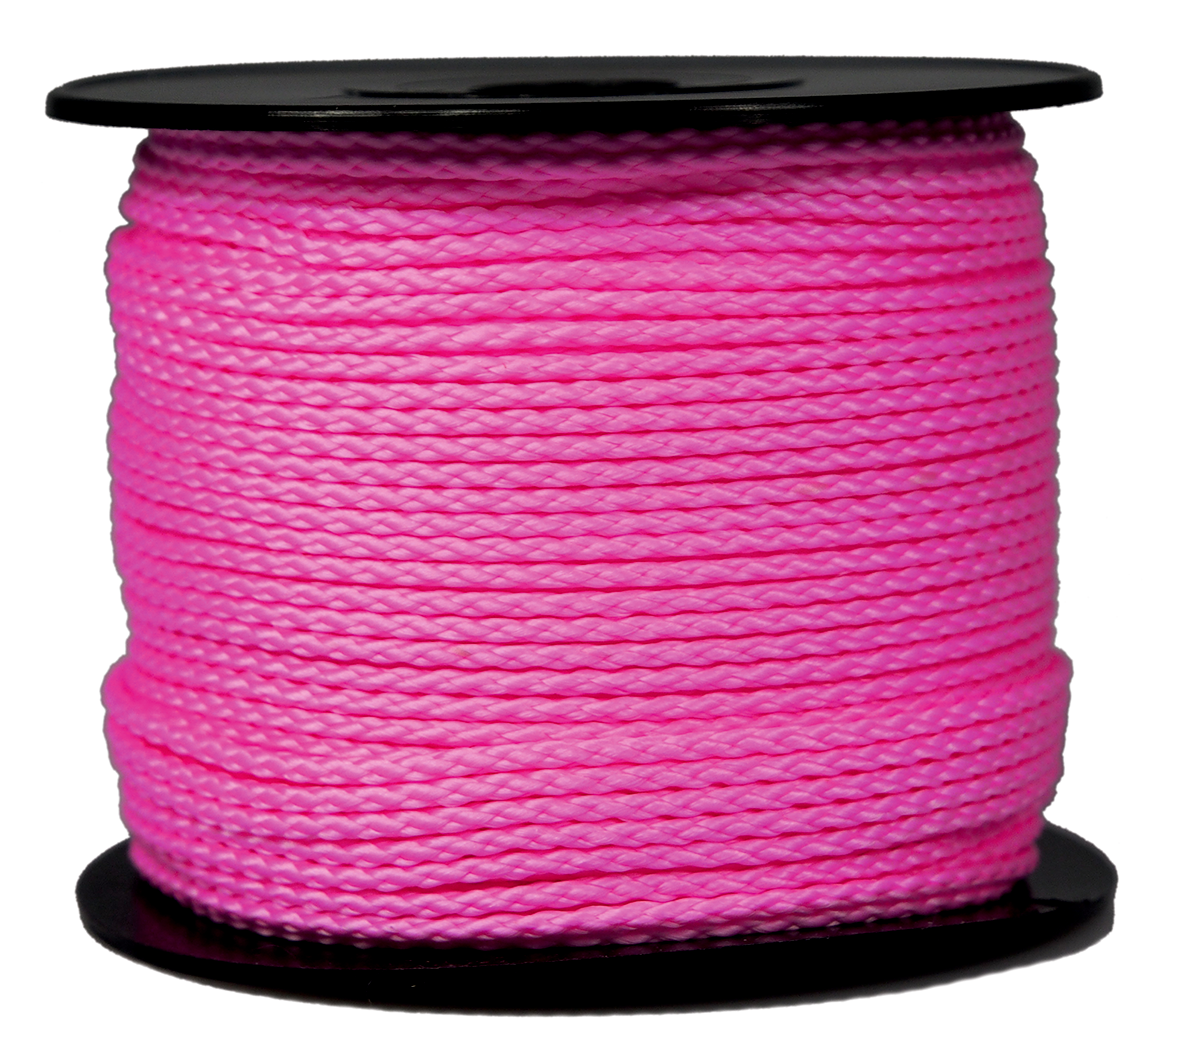 Maurerschnur neon-pink, 2,0mmx100m 